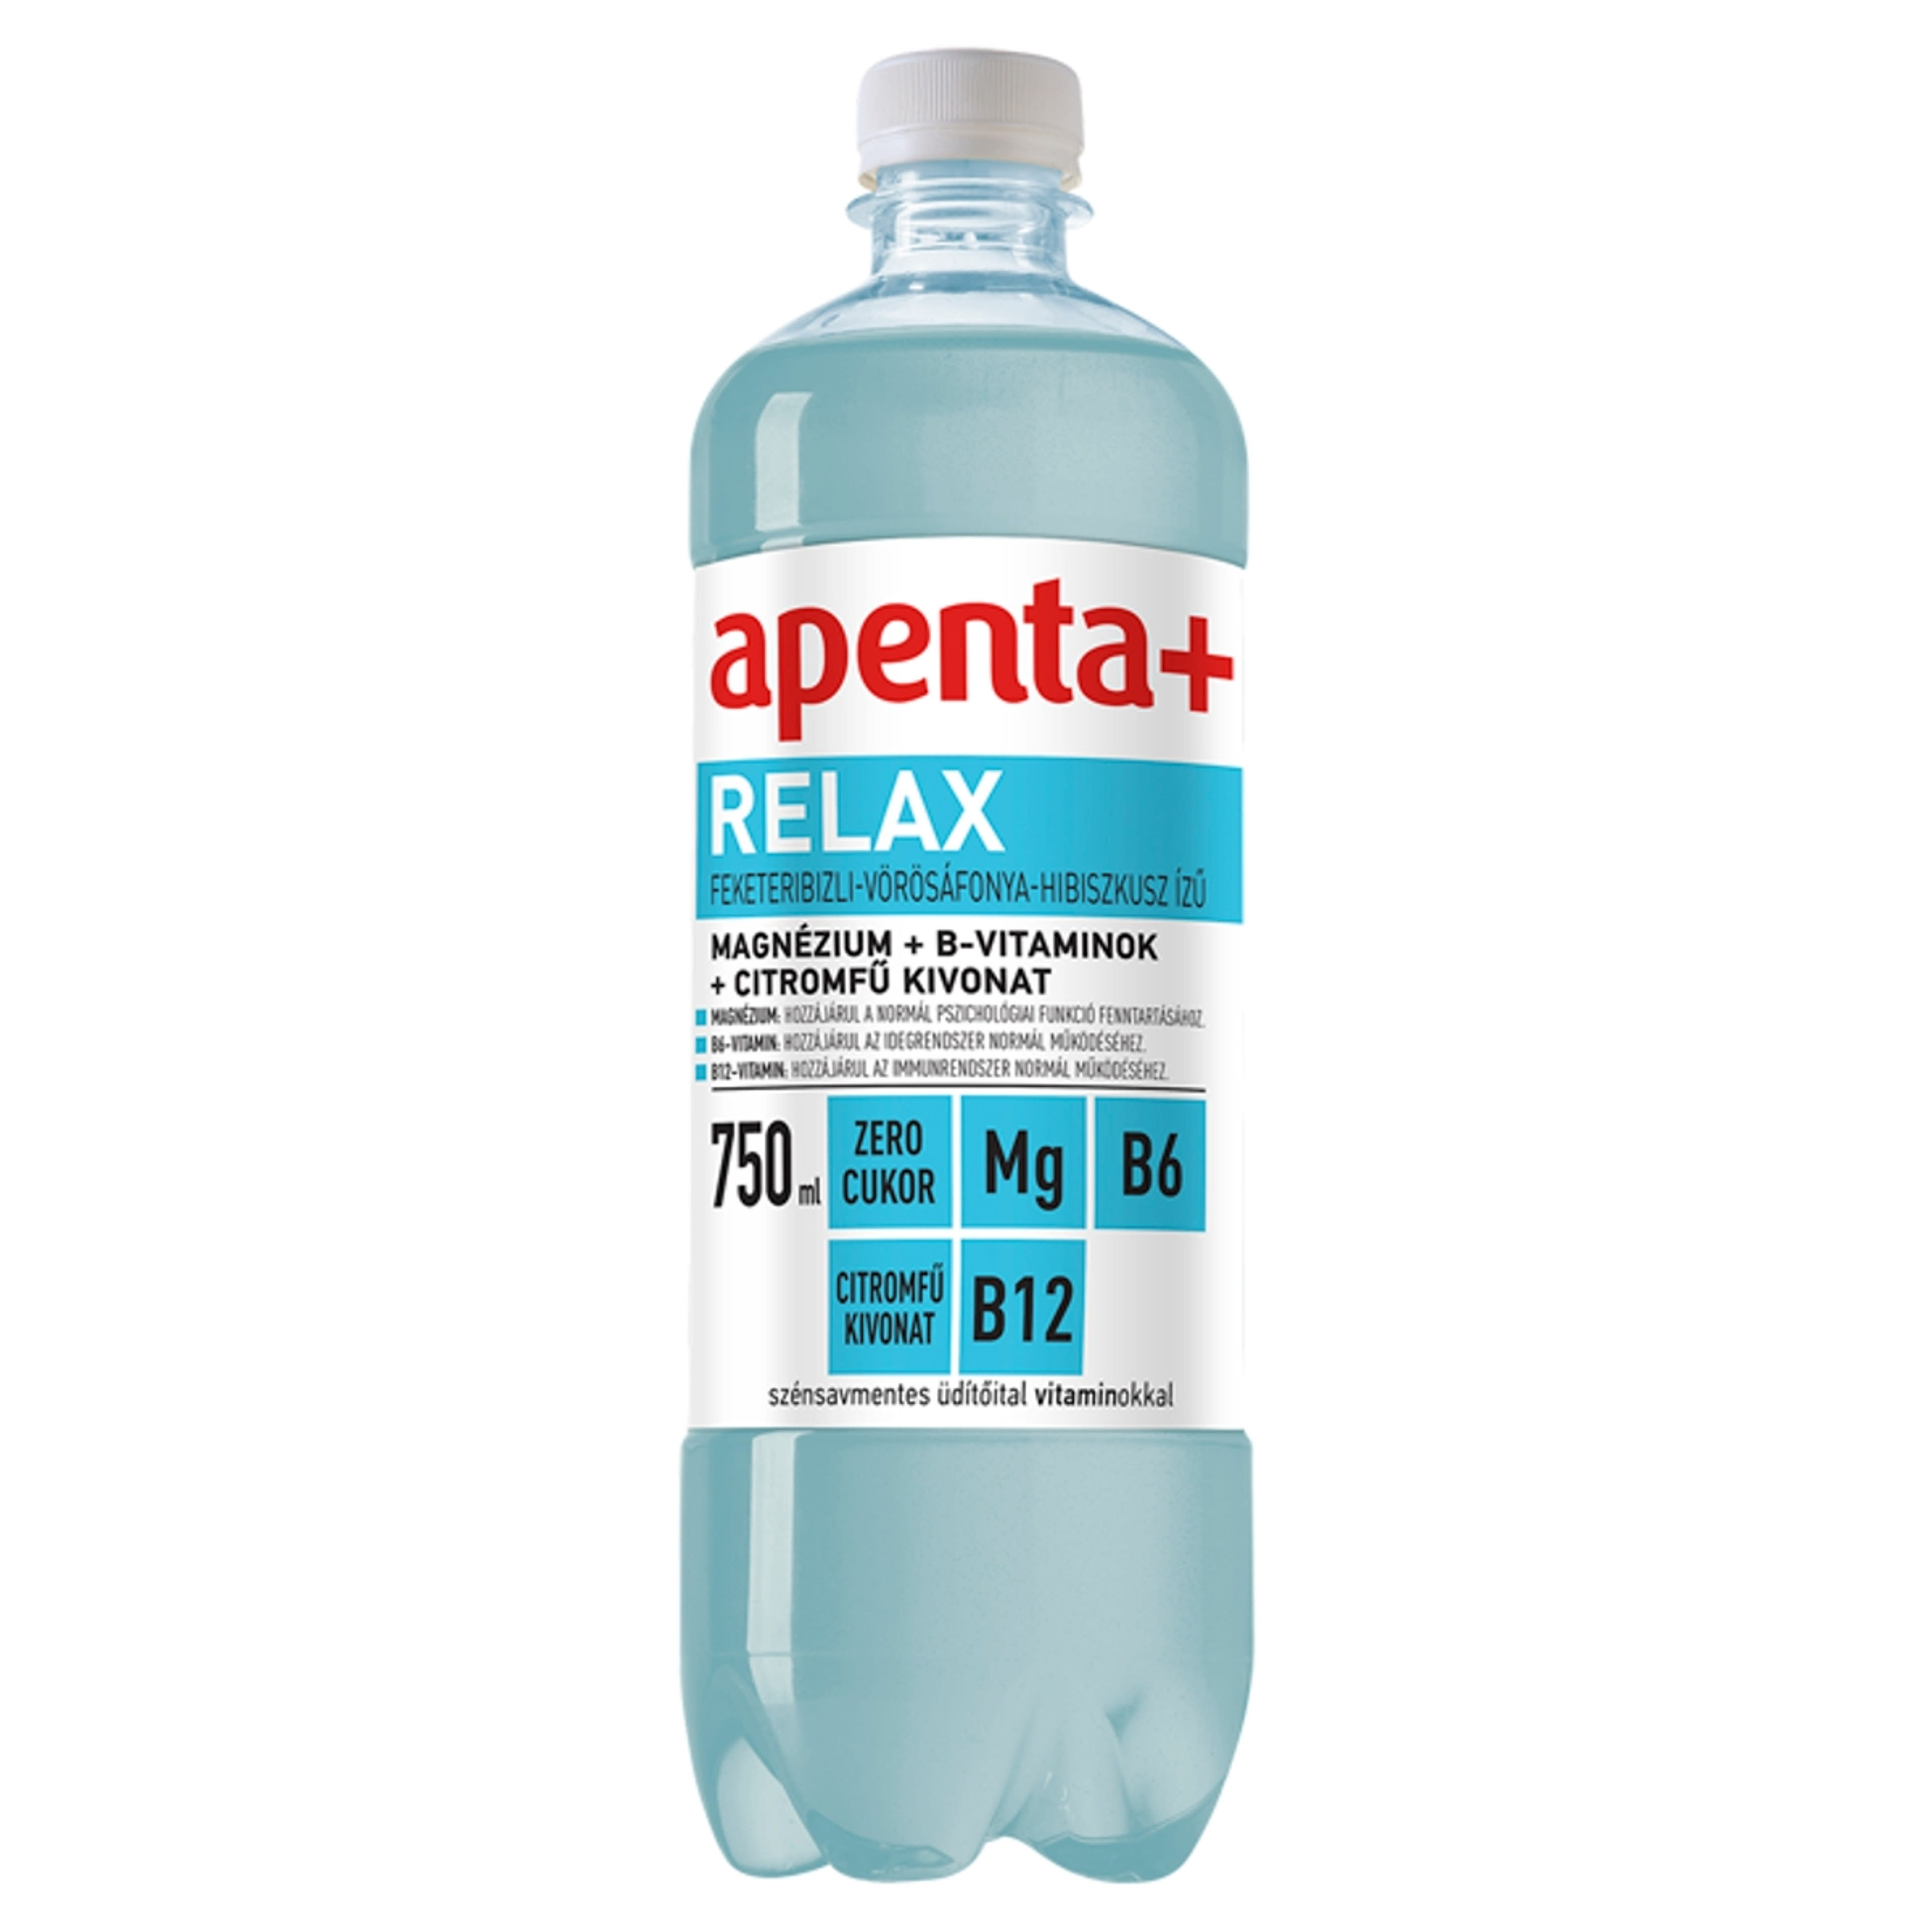 Apenta+ Relax üdítőital feketeribizli-vörösáfonya-hibiszkusz ízű - 750 ml-1